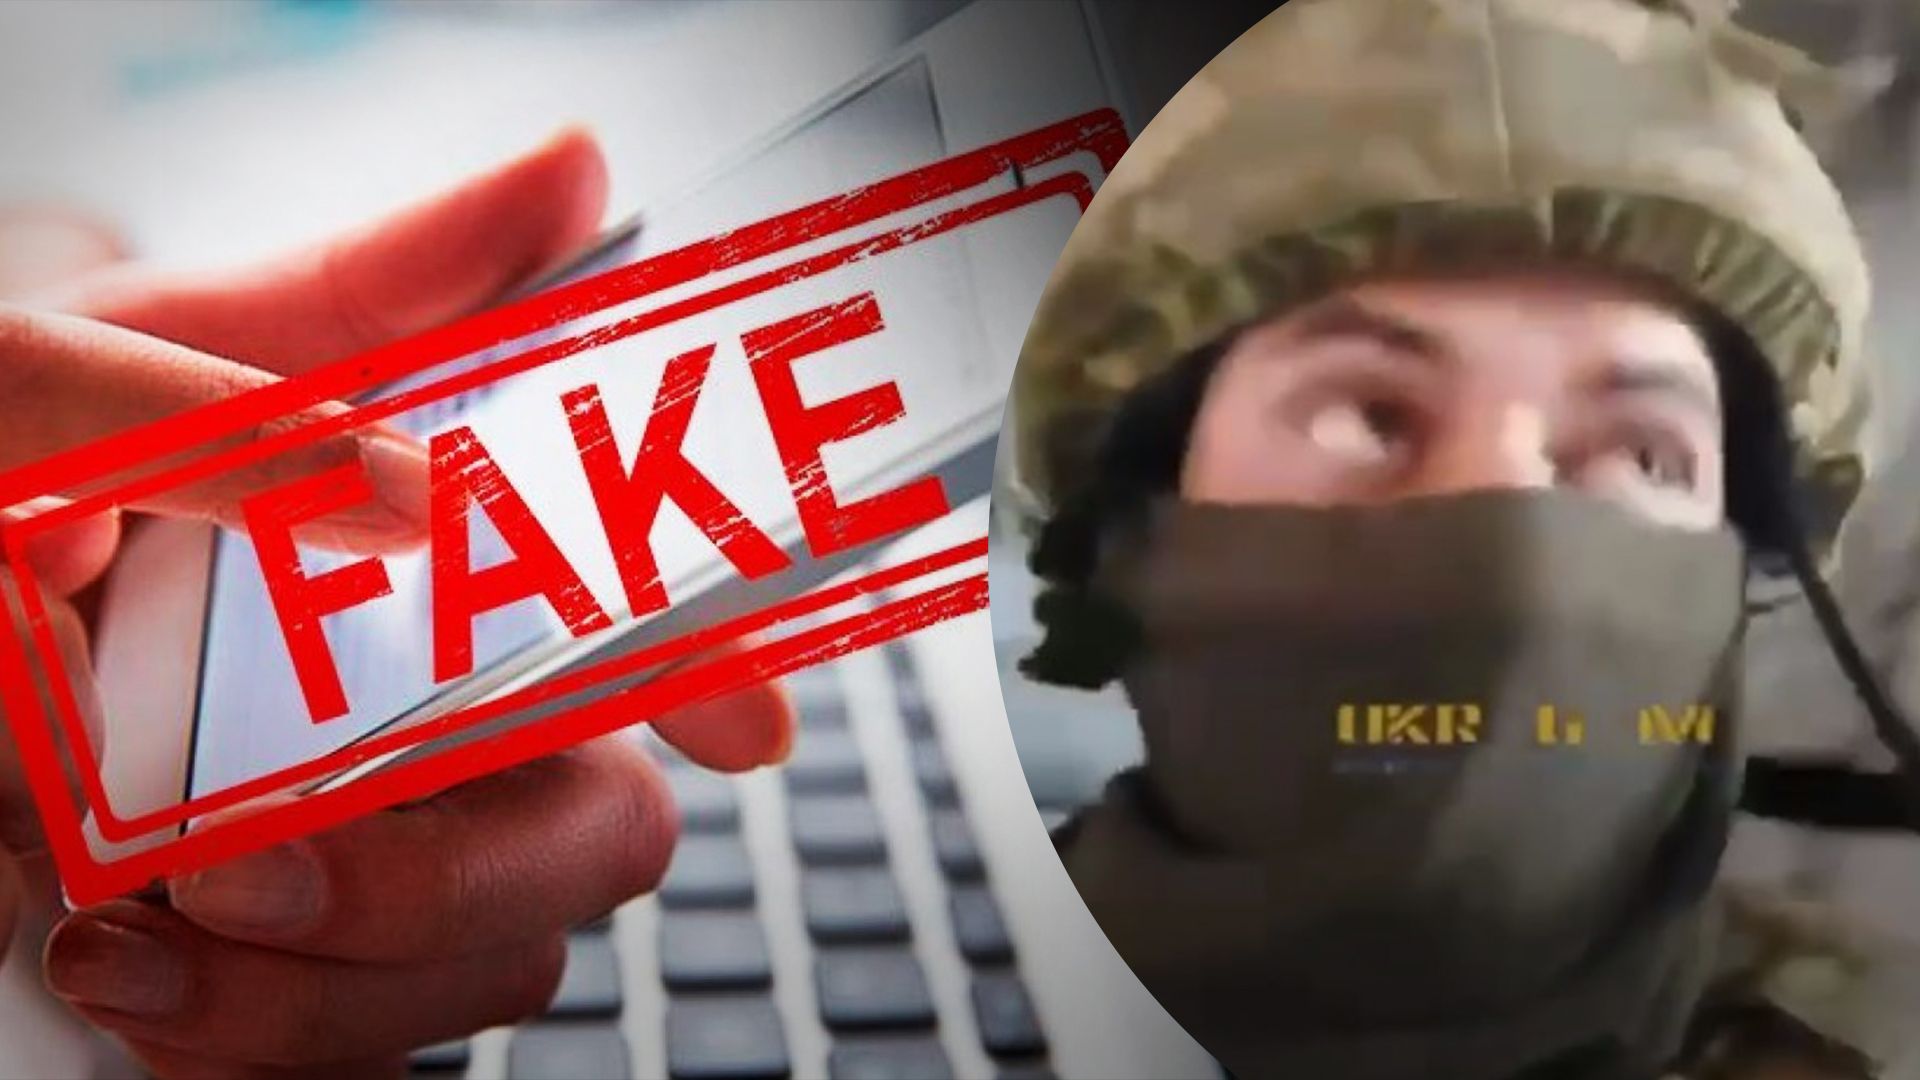 Відео, де нібито боєць ЗСУ скаржиться на командування, виявилося фейком